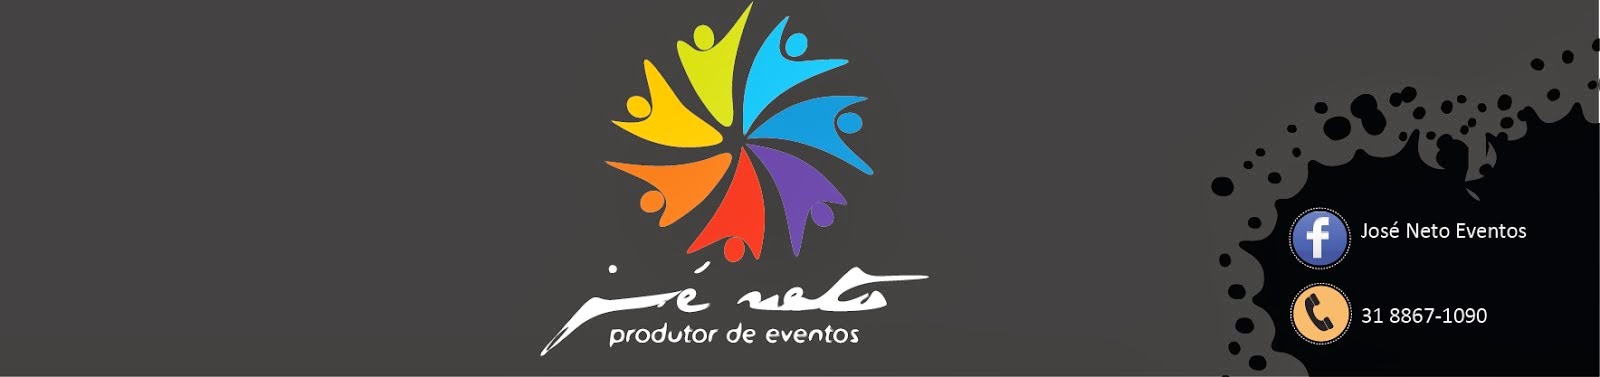 José Neto | Eventos